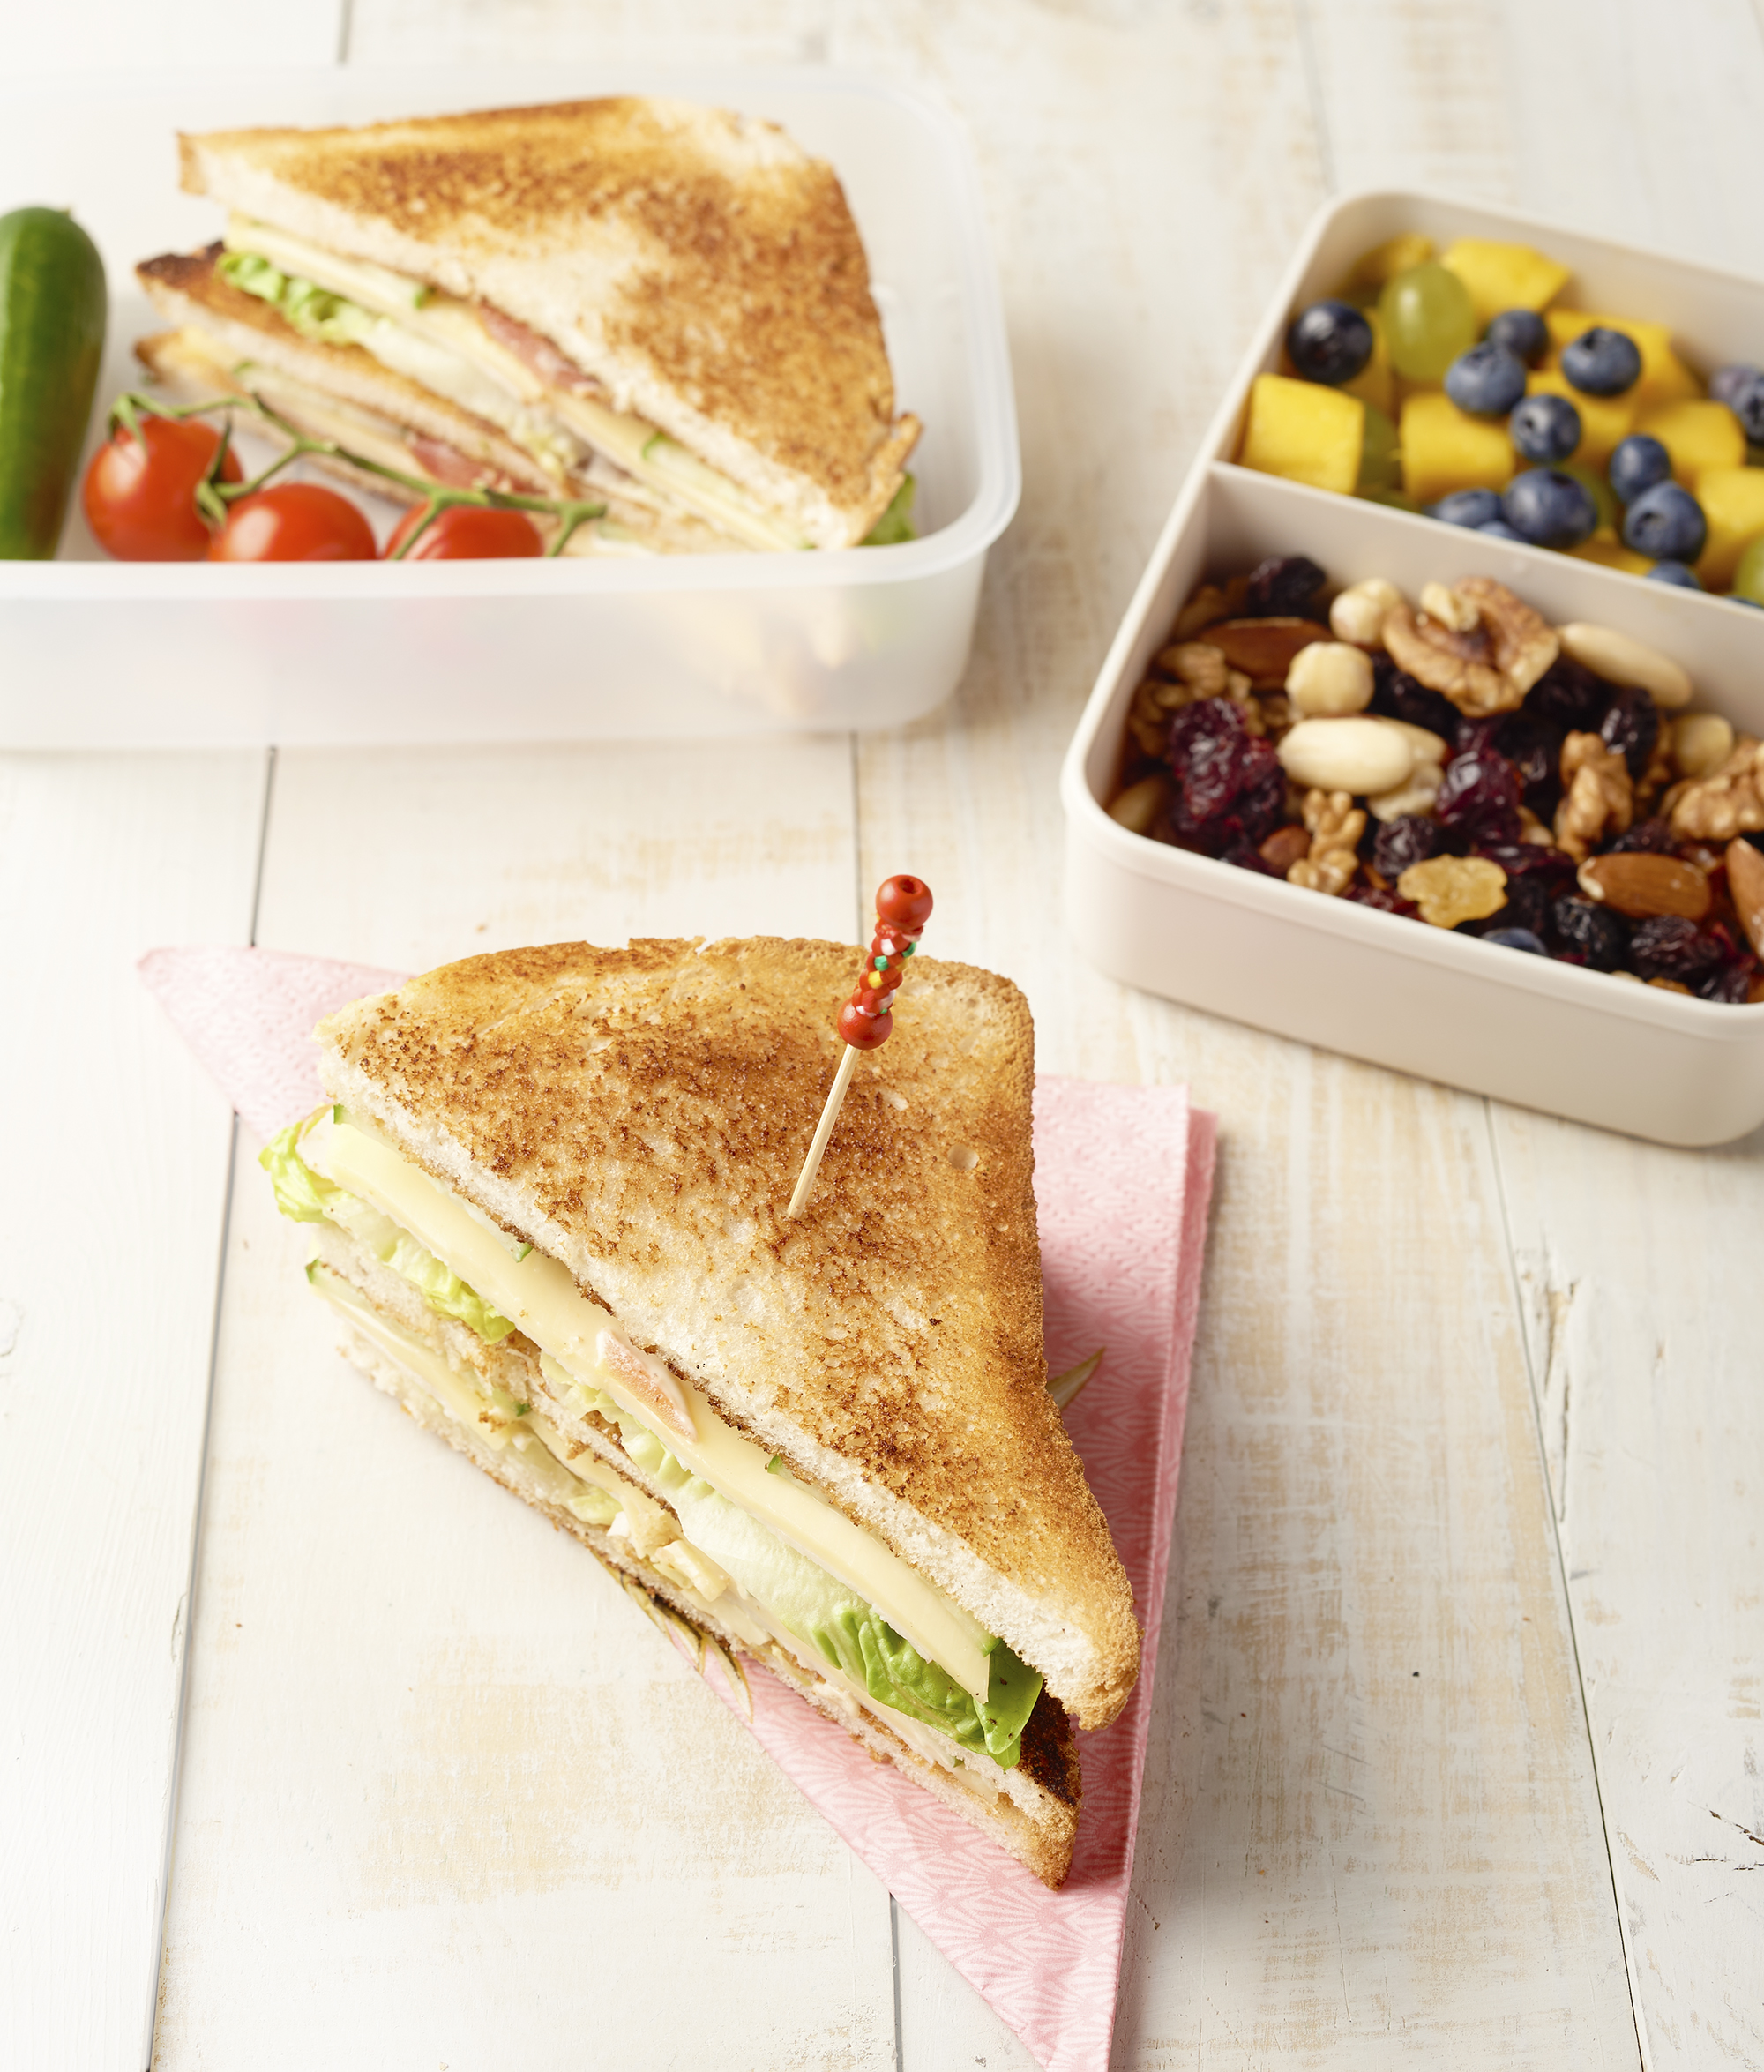 Club sandwich lunchbox